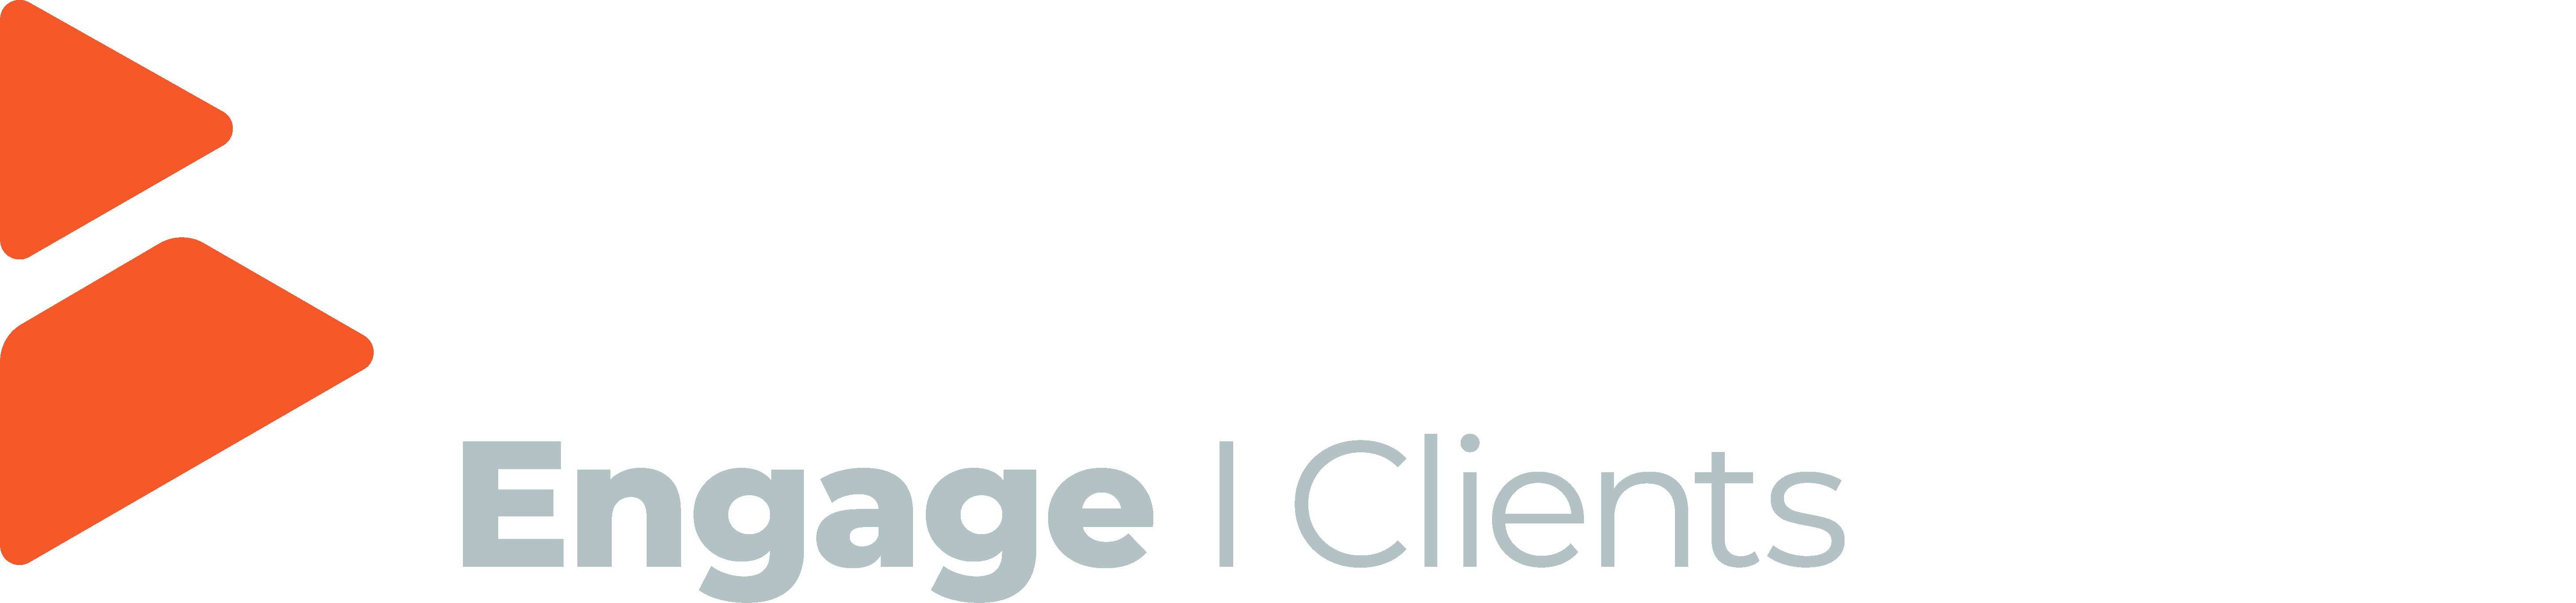 Broadstone Engage logo